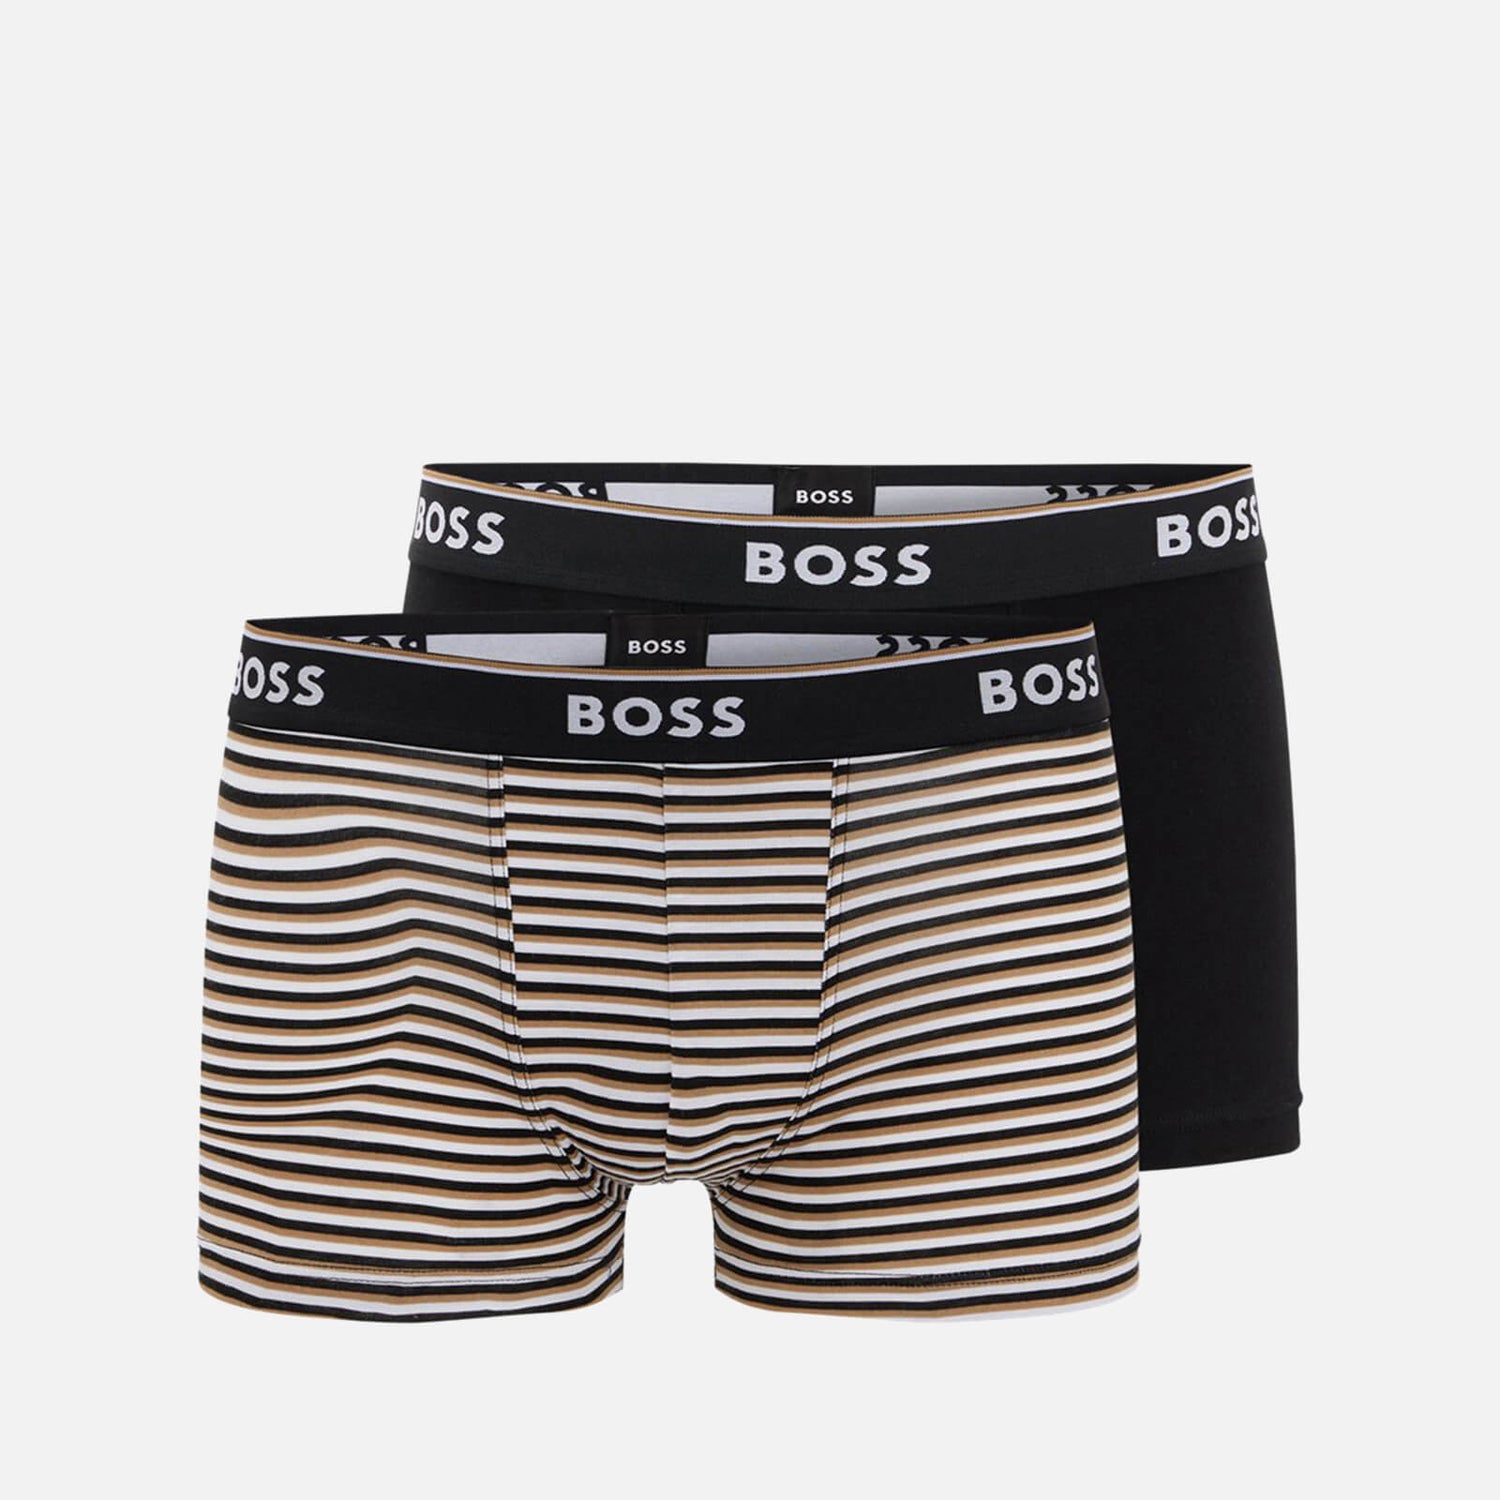 BOSS Bodywear 3-Pack Power Design Trunks - M